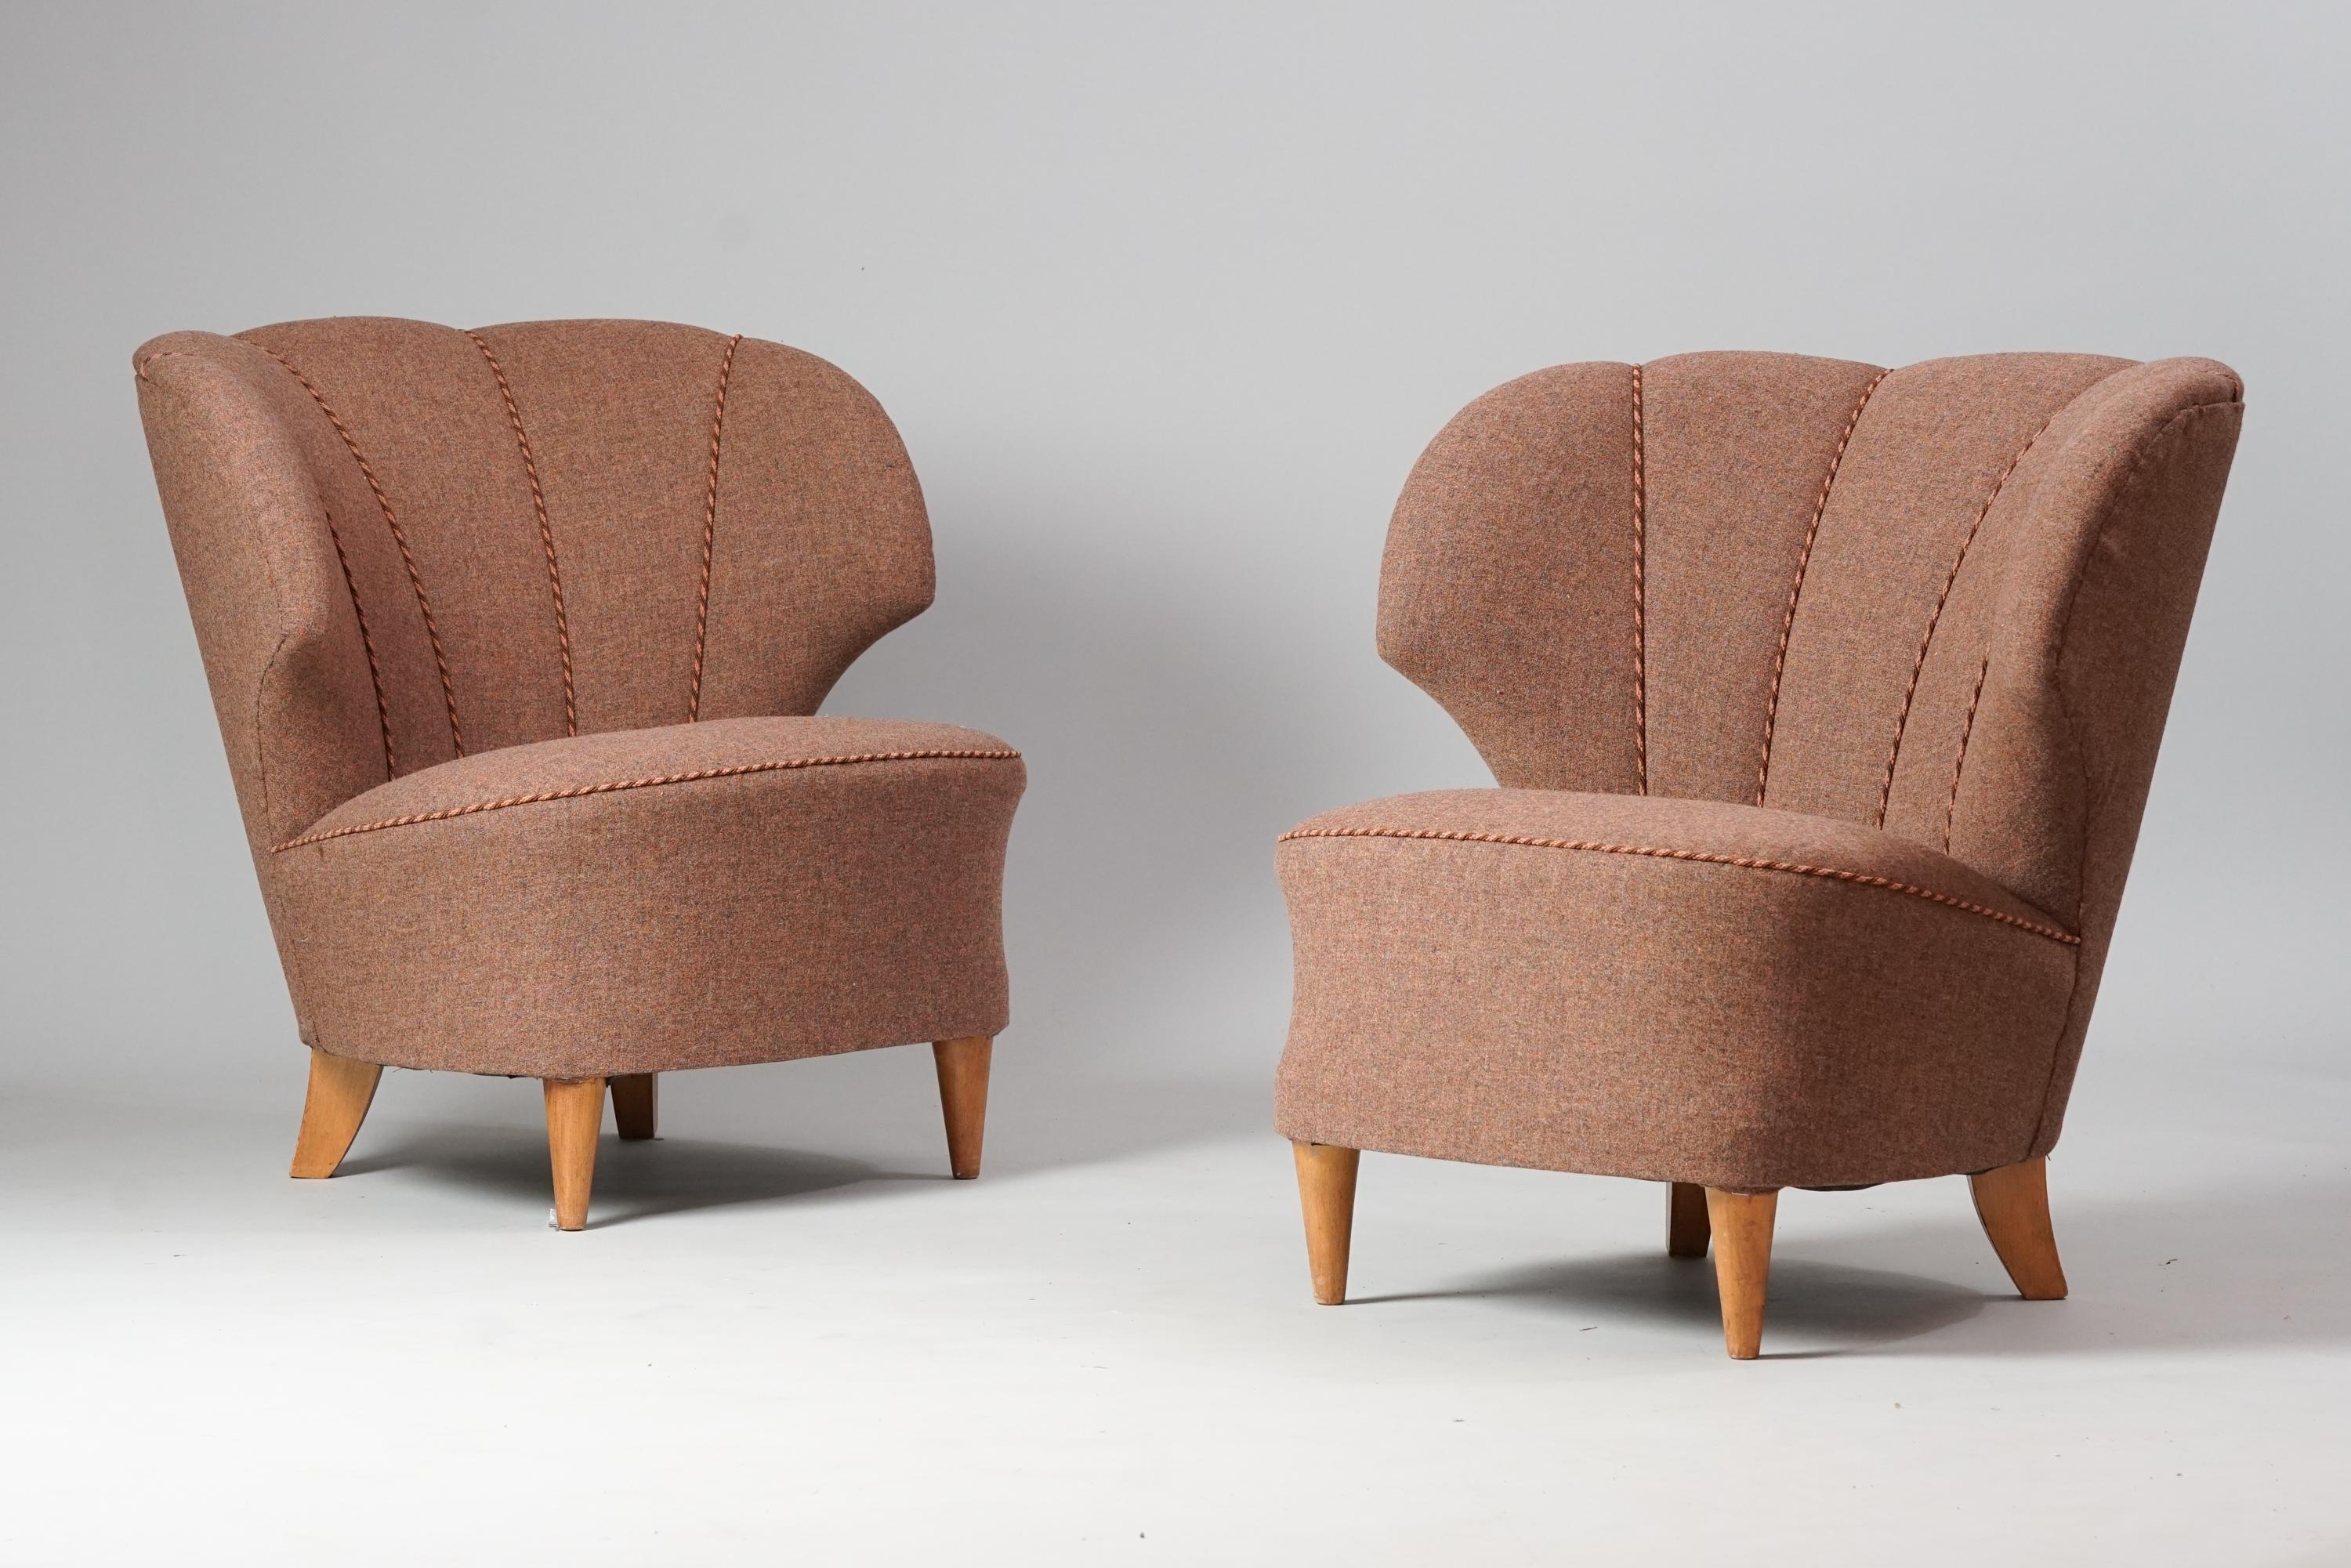 Paar Sessel von Carl-Johan Boman, 1950er Jahre. Gestell aus Birke, neu gepolstertes Wollgewebe. Guter Vintage-Zustand, leichte Patina im Einklang mit Alter und Gebrauch. Die Sessel werden als Set verkauft. 